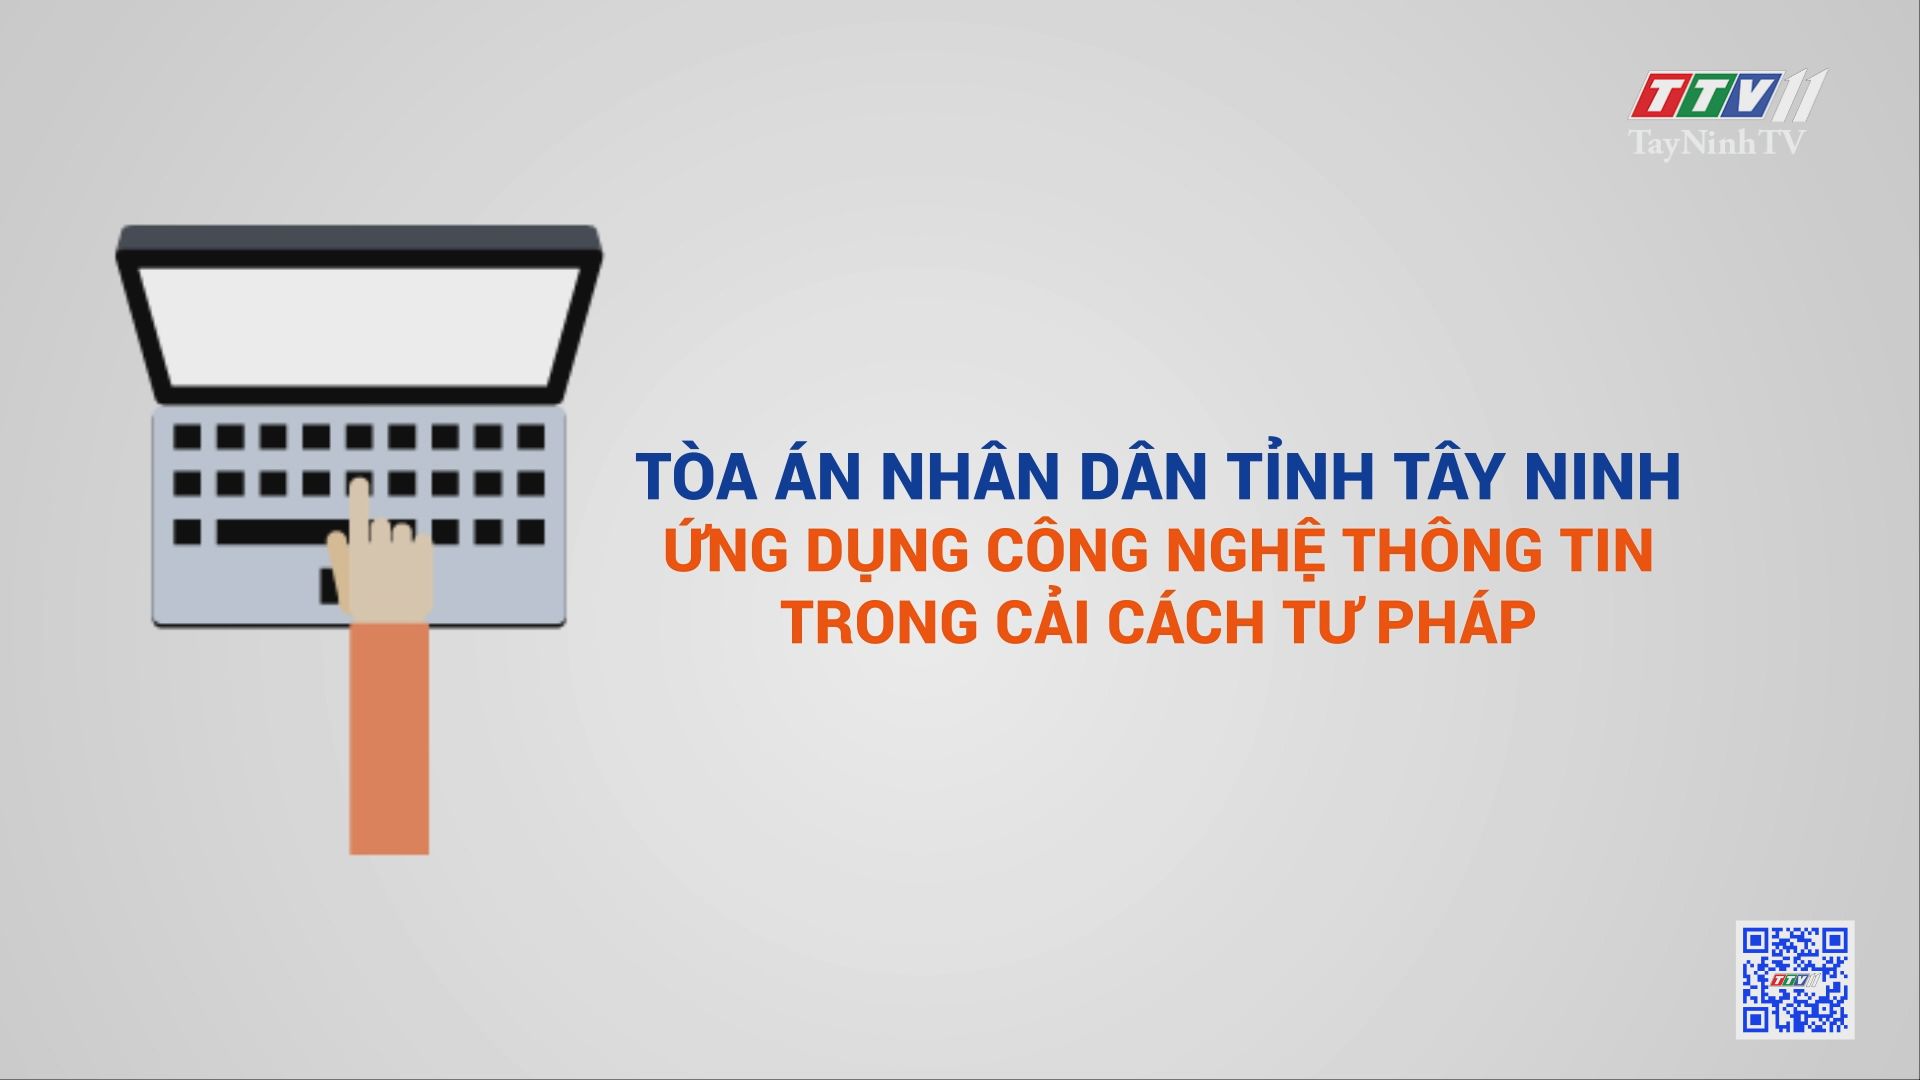 Tòa án nhân dân tỉnh Tây Ninh ứng dụng công nghệ thông tin trong cải cách tư pháp | PHÁP LUẬT VÀ ĐỜI SỐNG | TayNinhTV